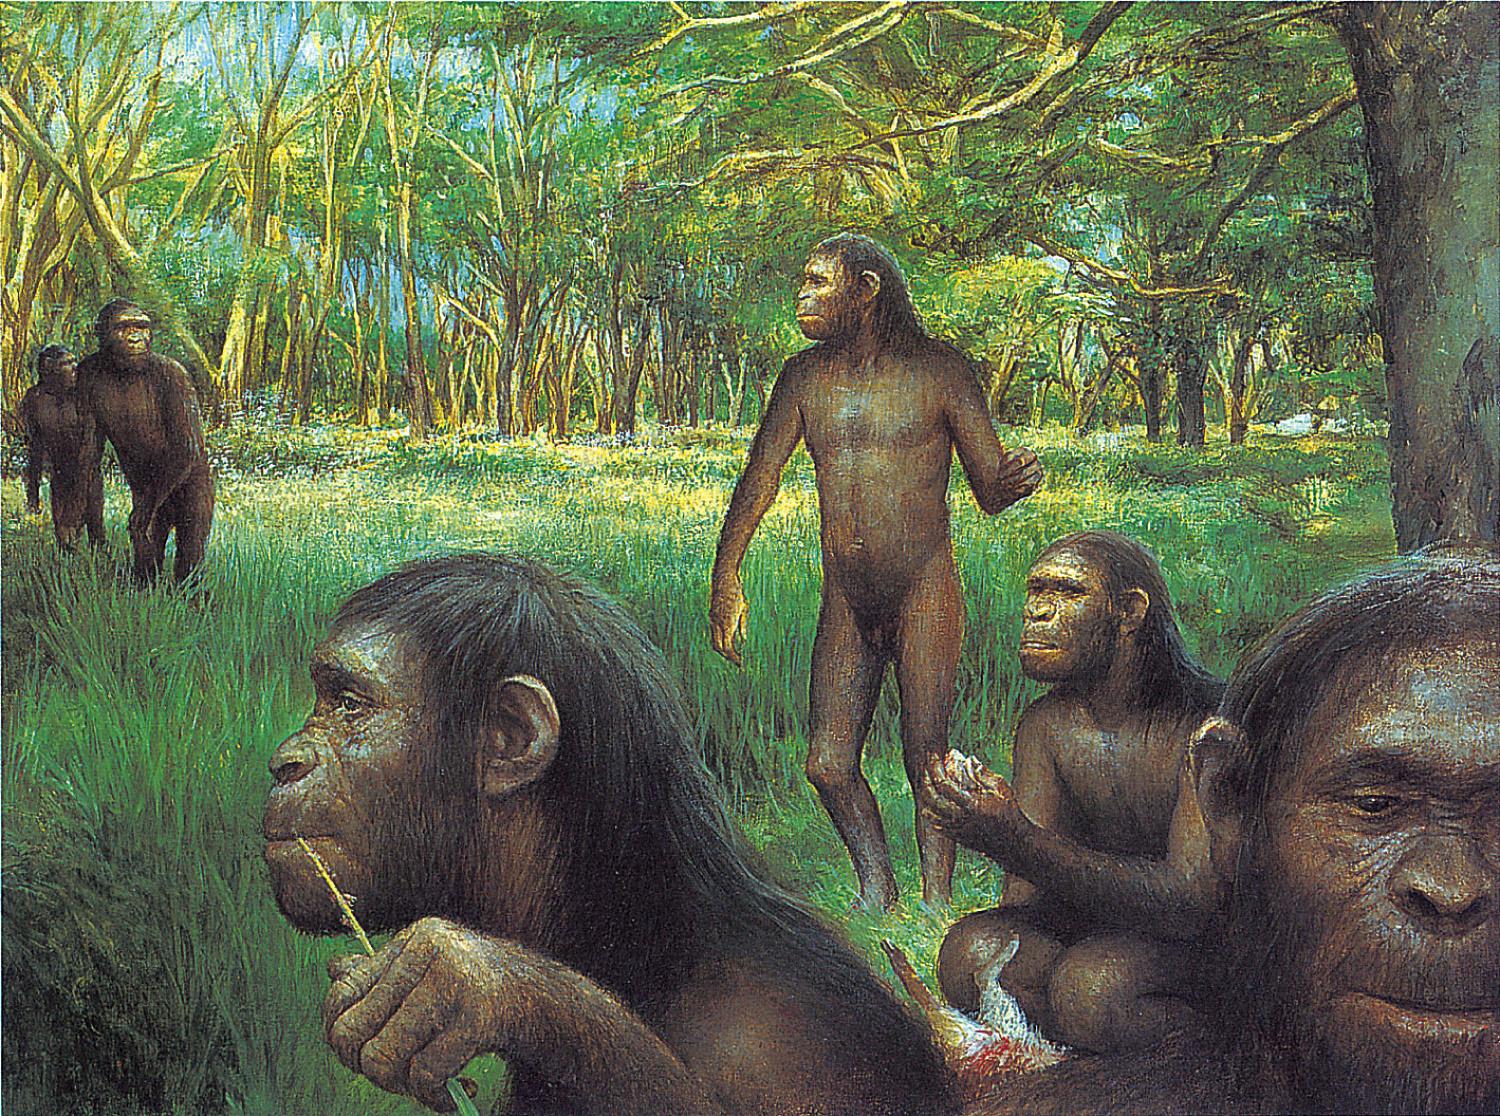 Evolution of hominids